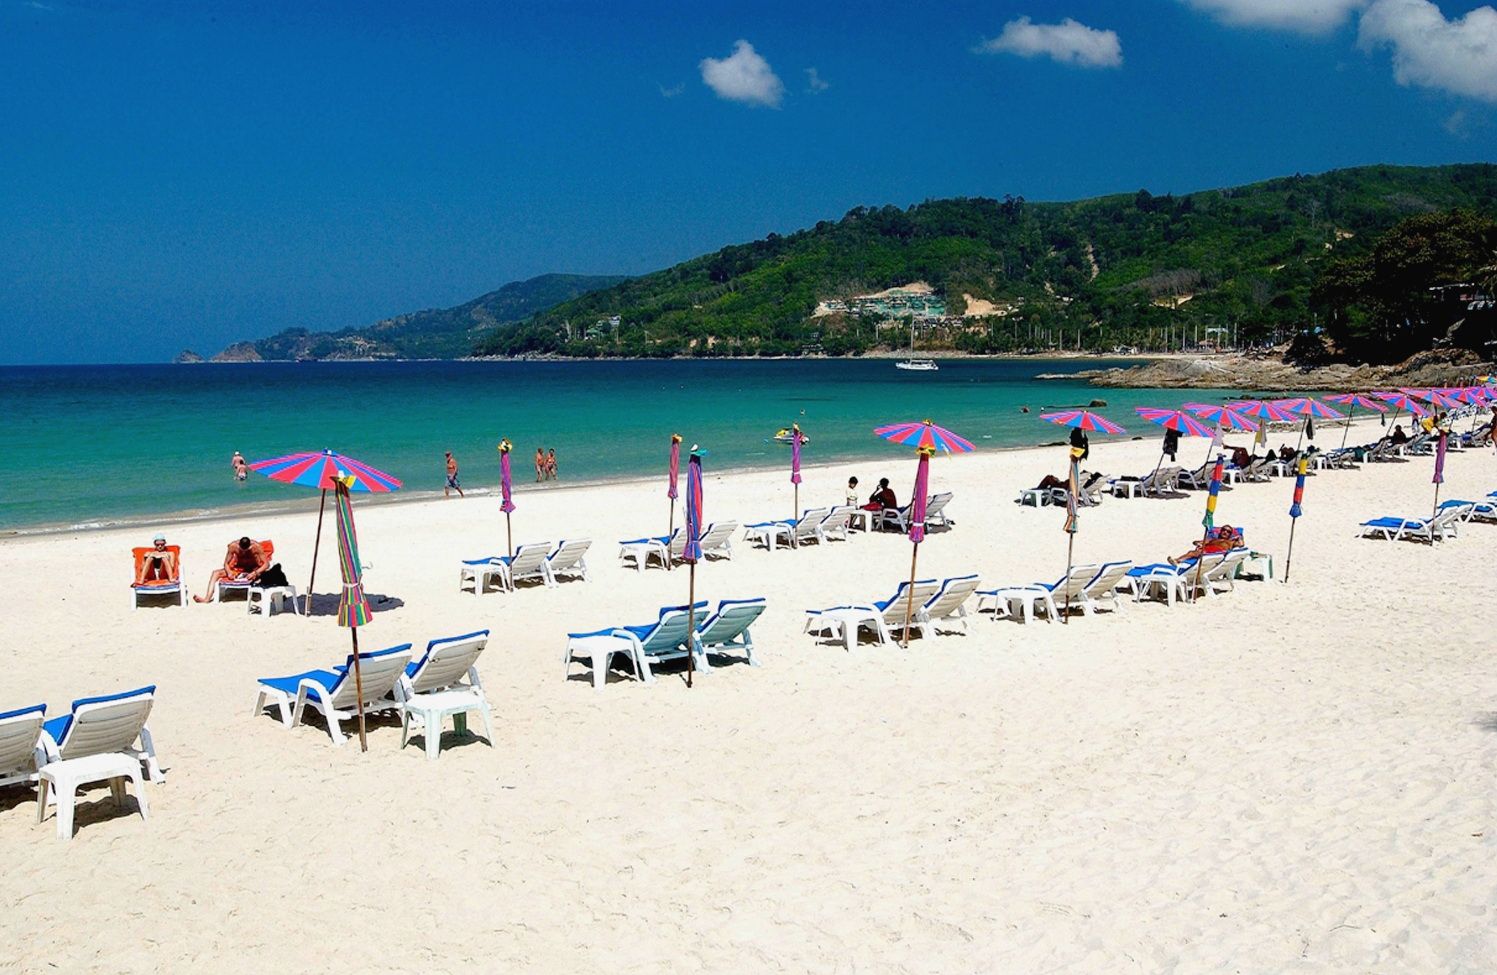 Beach destination in Thailand